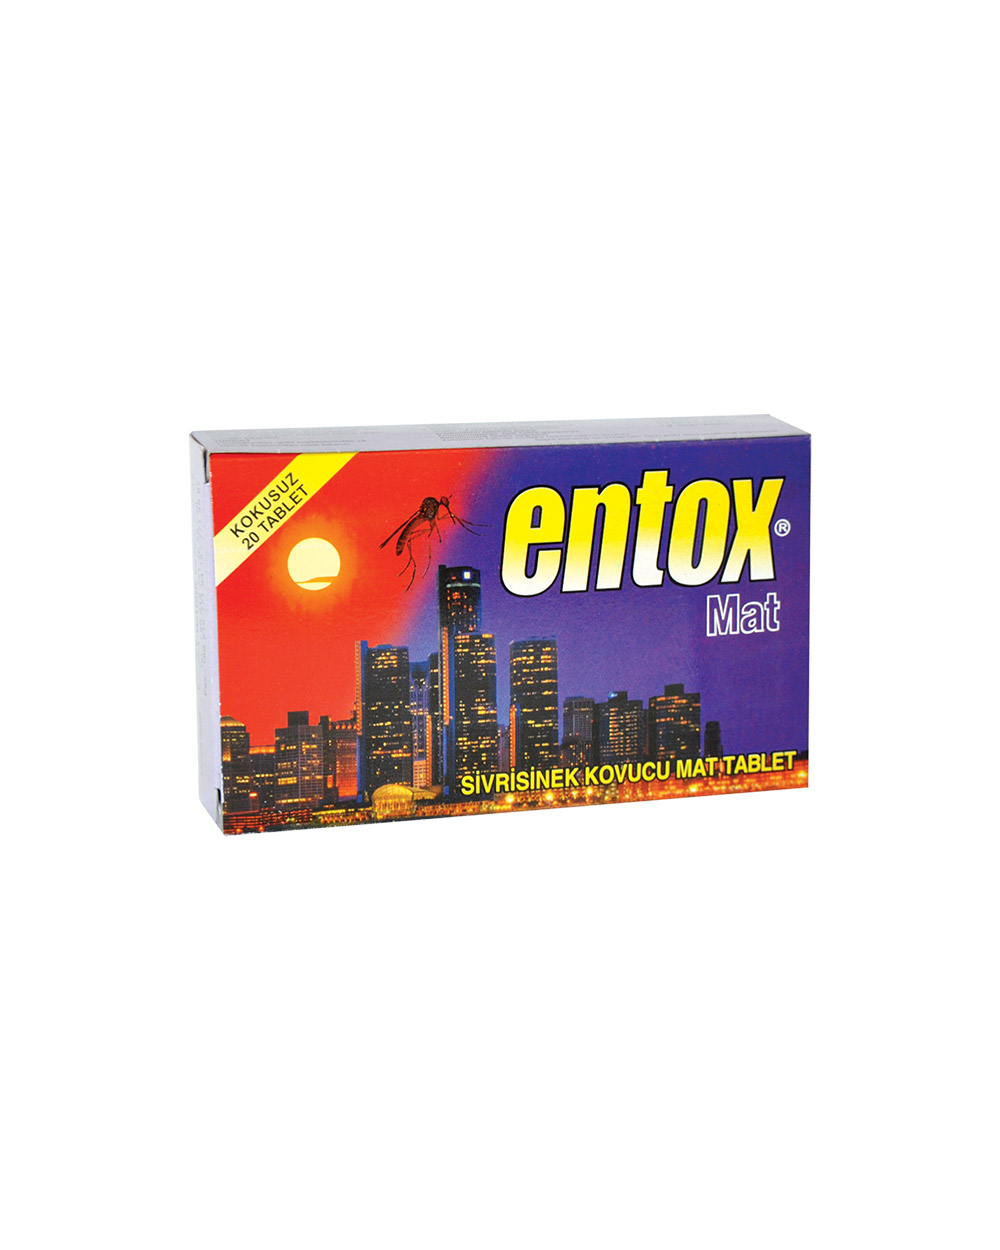 Entox Mat Tablet